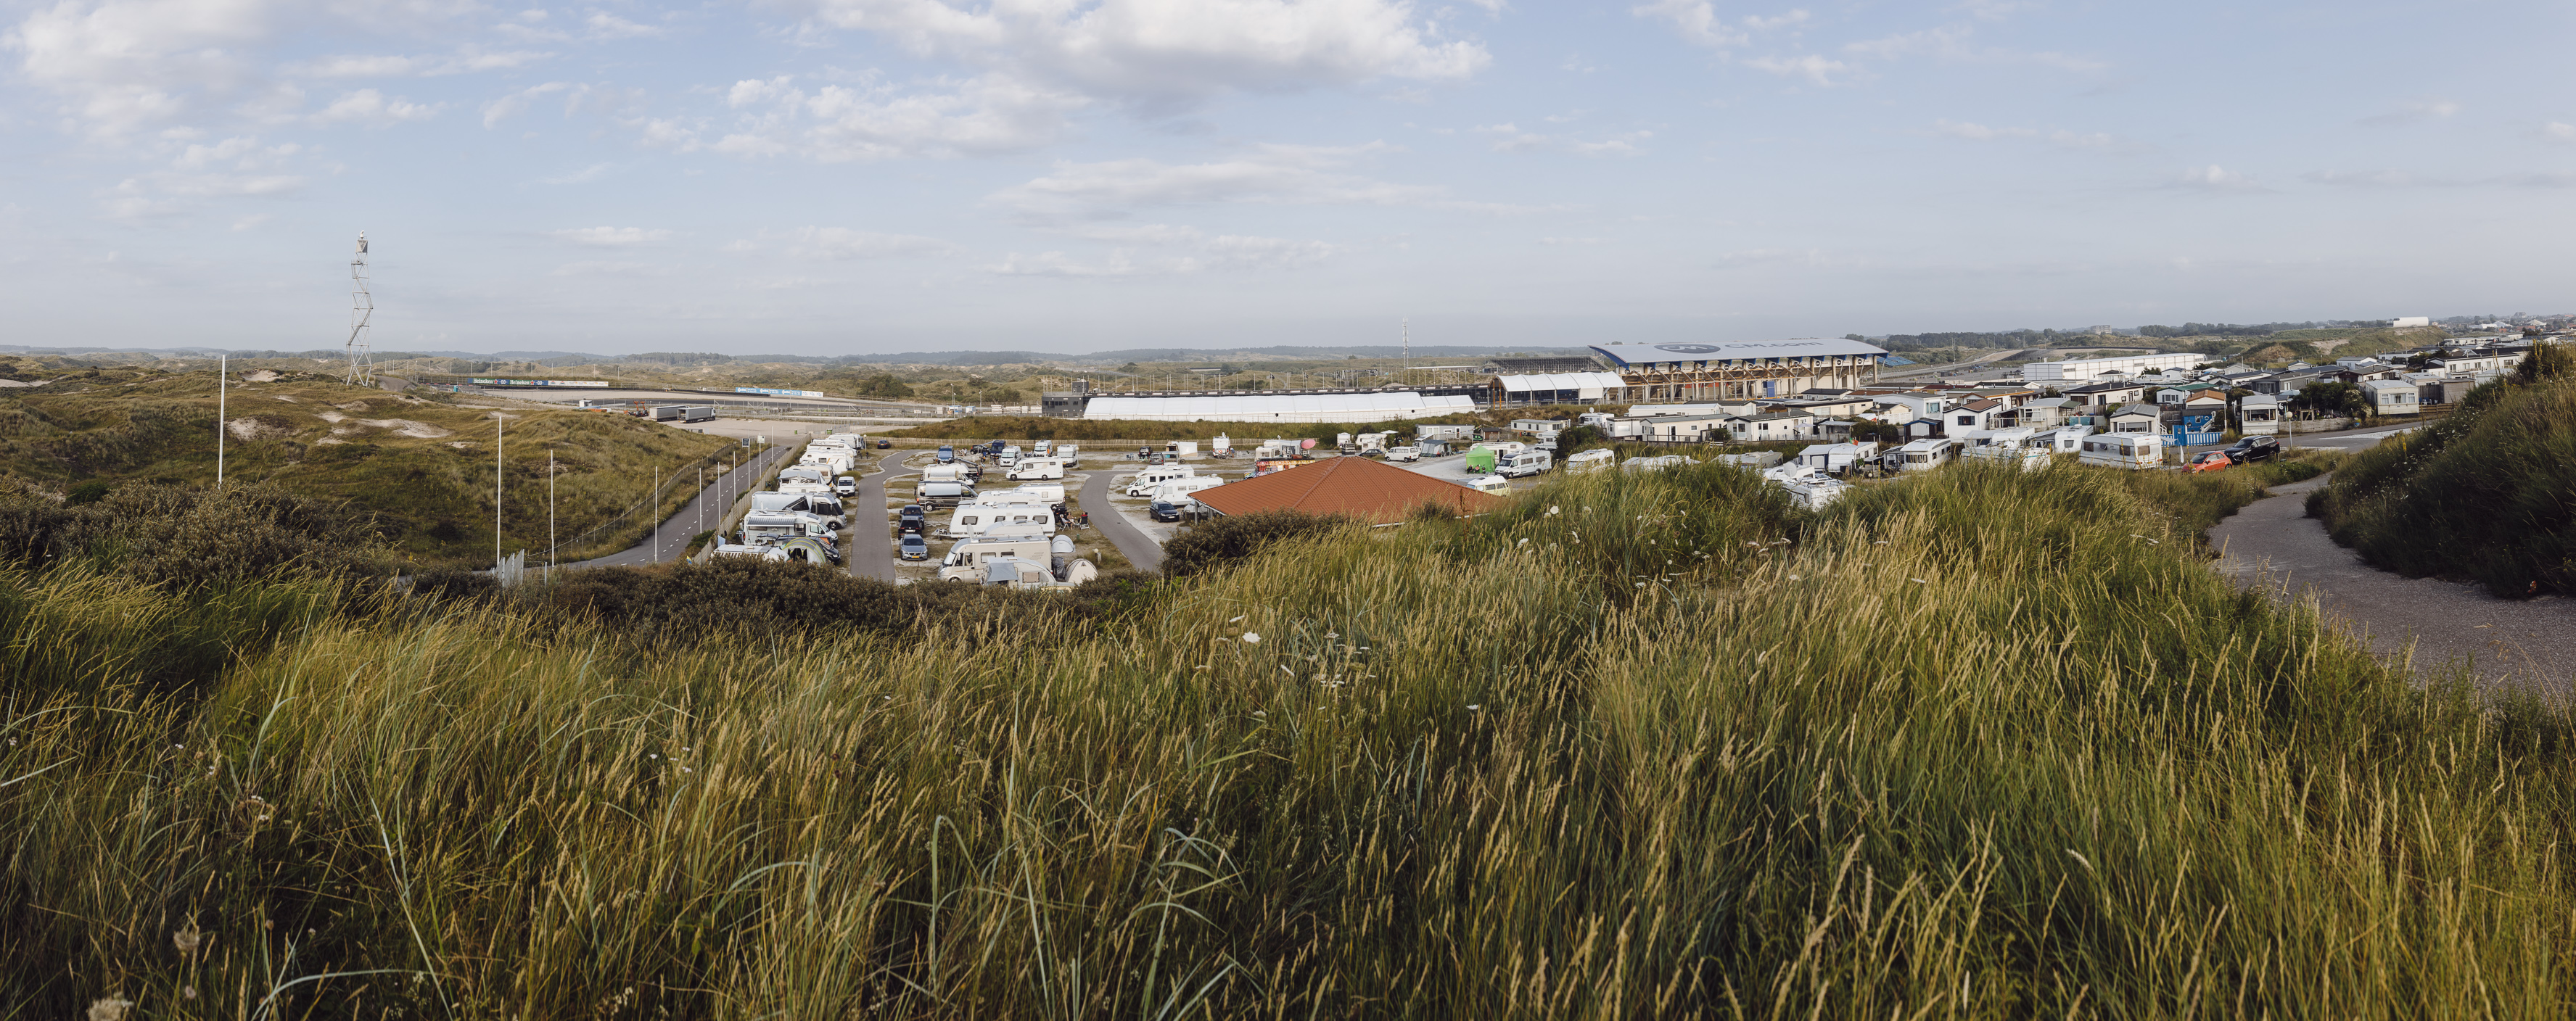 Im Hintergrund des Campings die berühmte F1-Rennstrecke Zandvoort